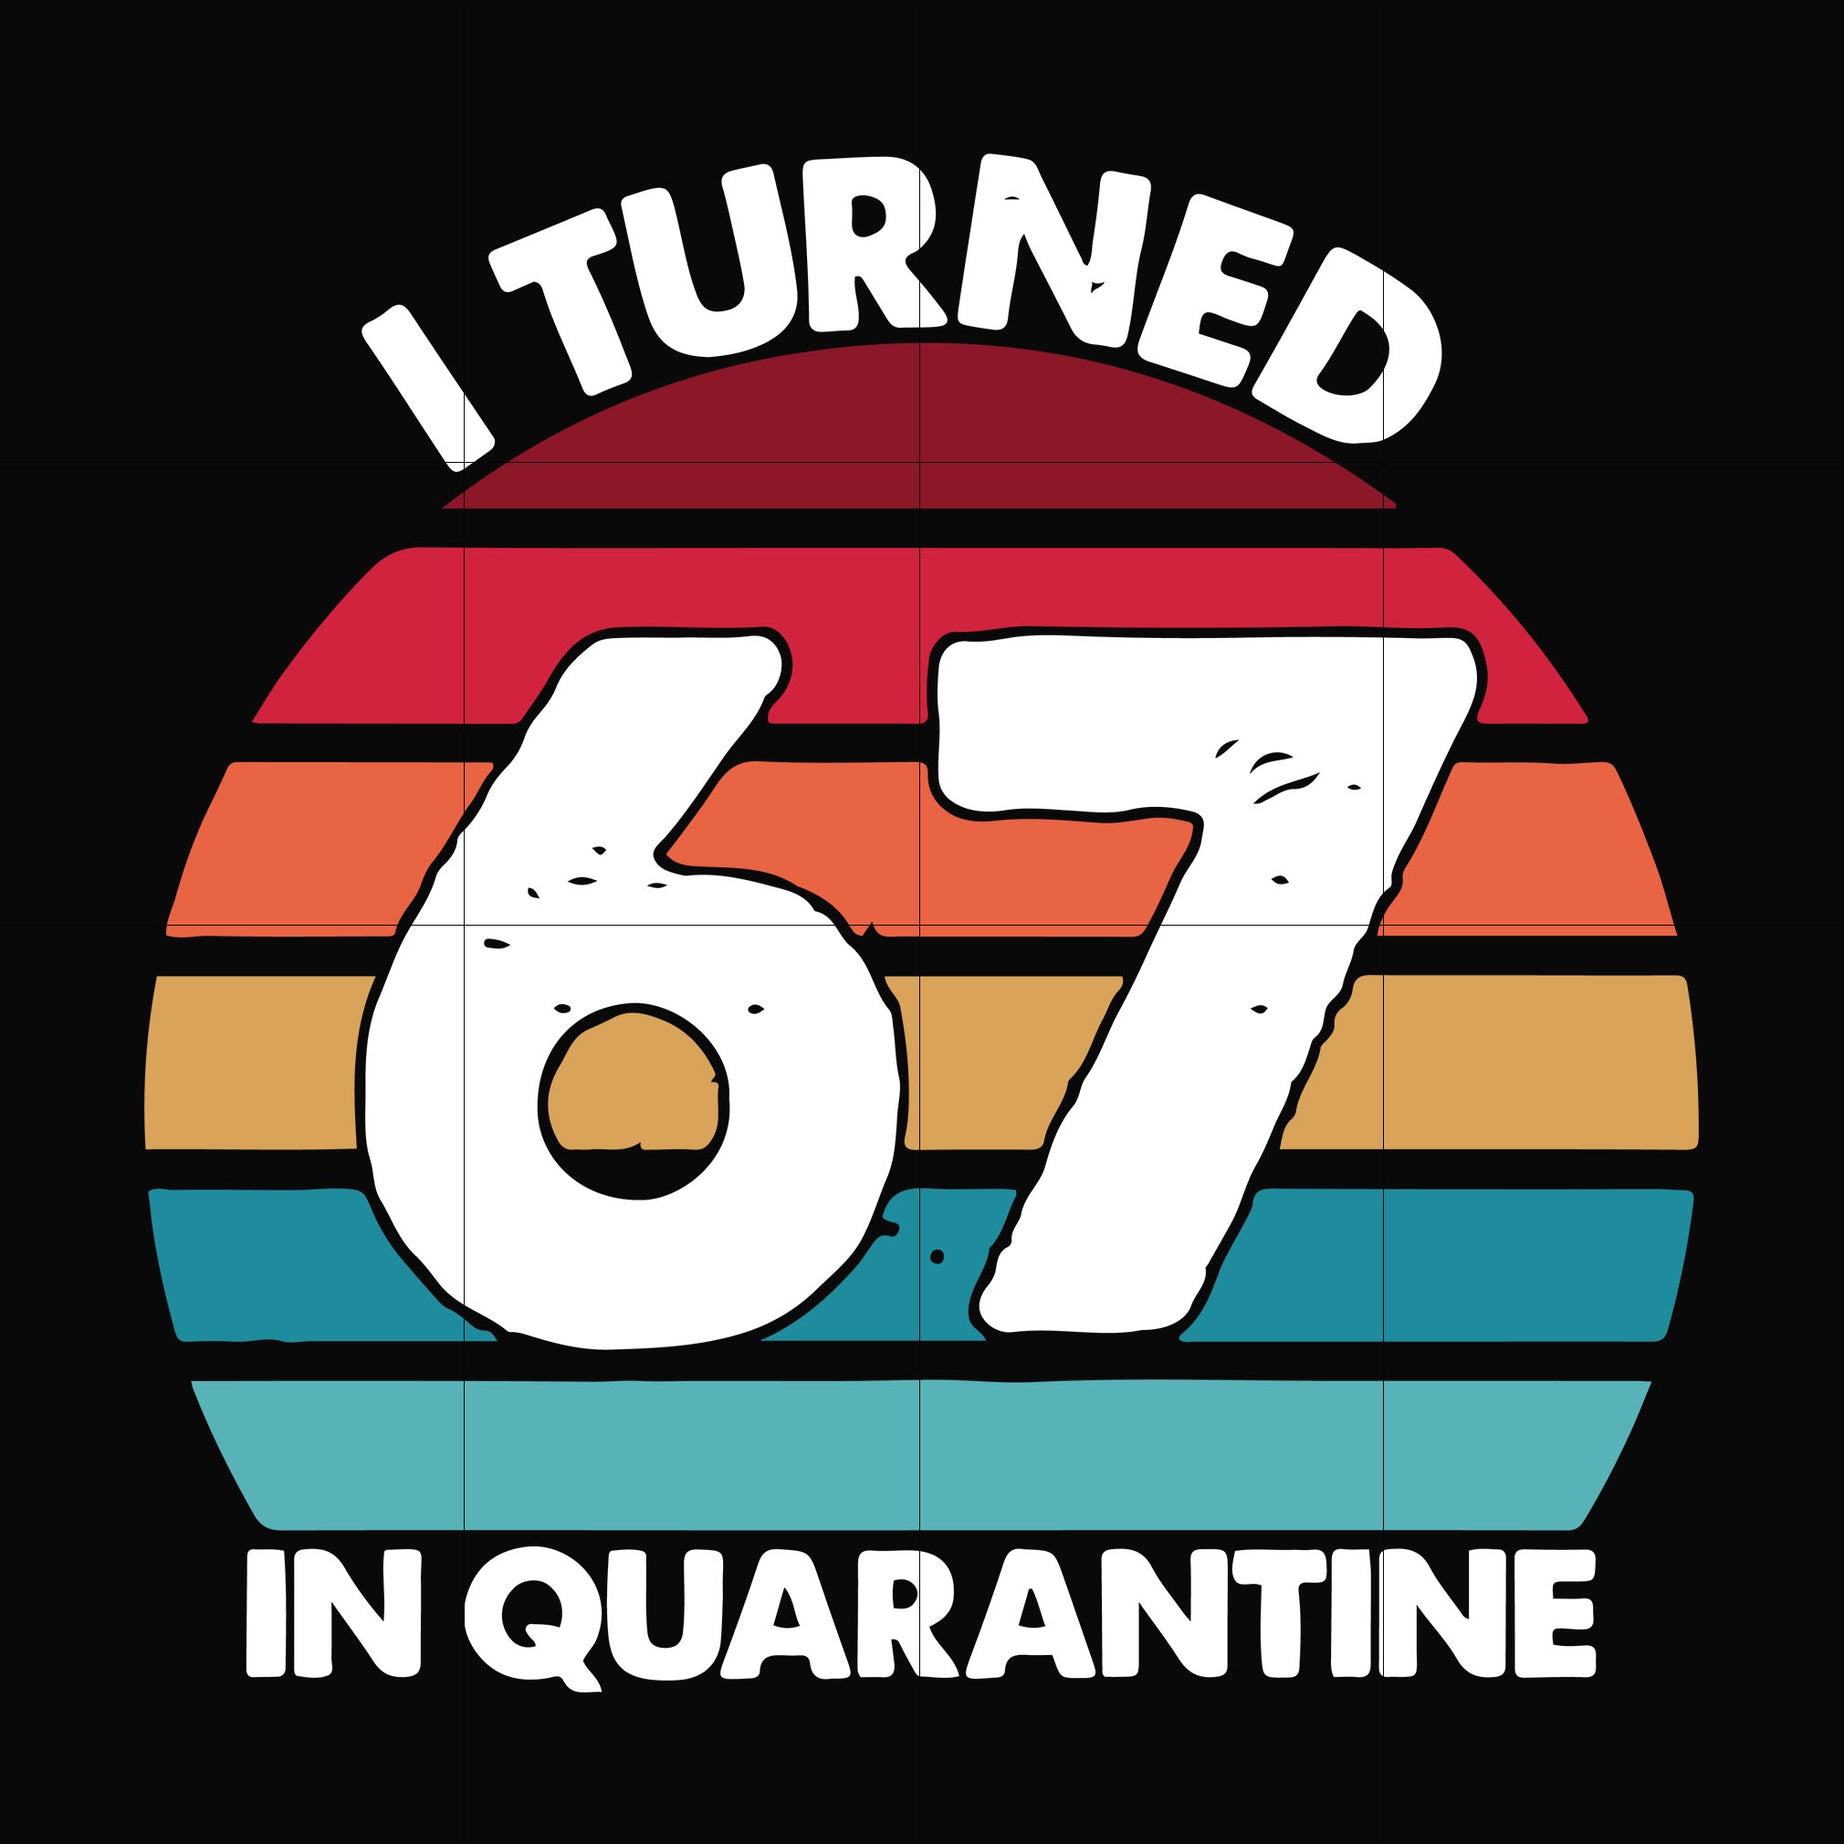 I turned 67 in quarantine svg, png, dxf, eps digital file TD2907208